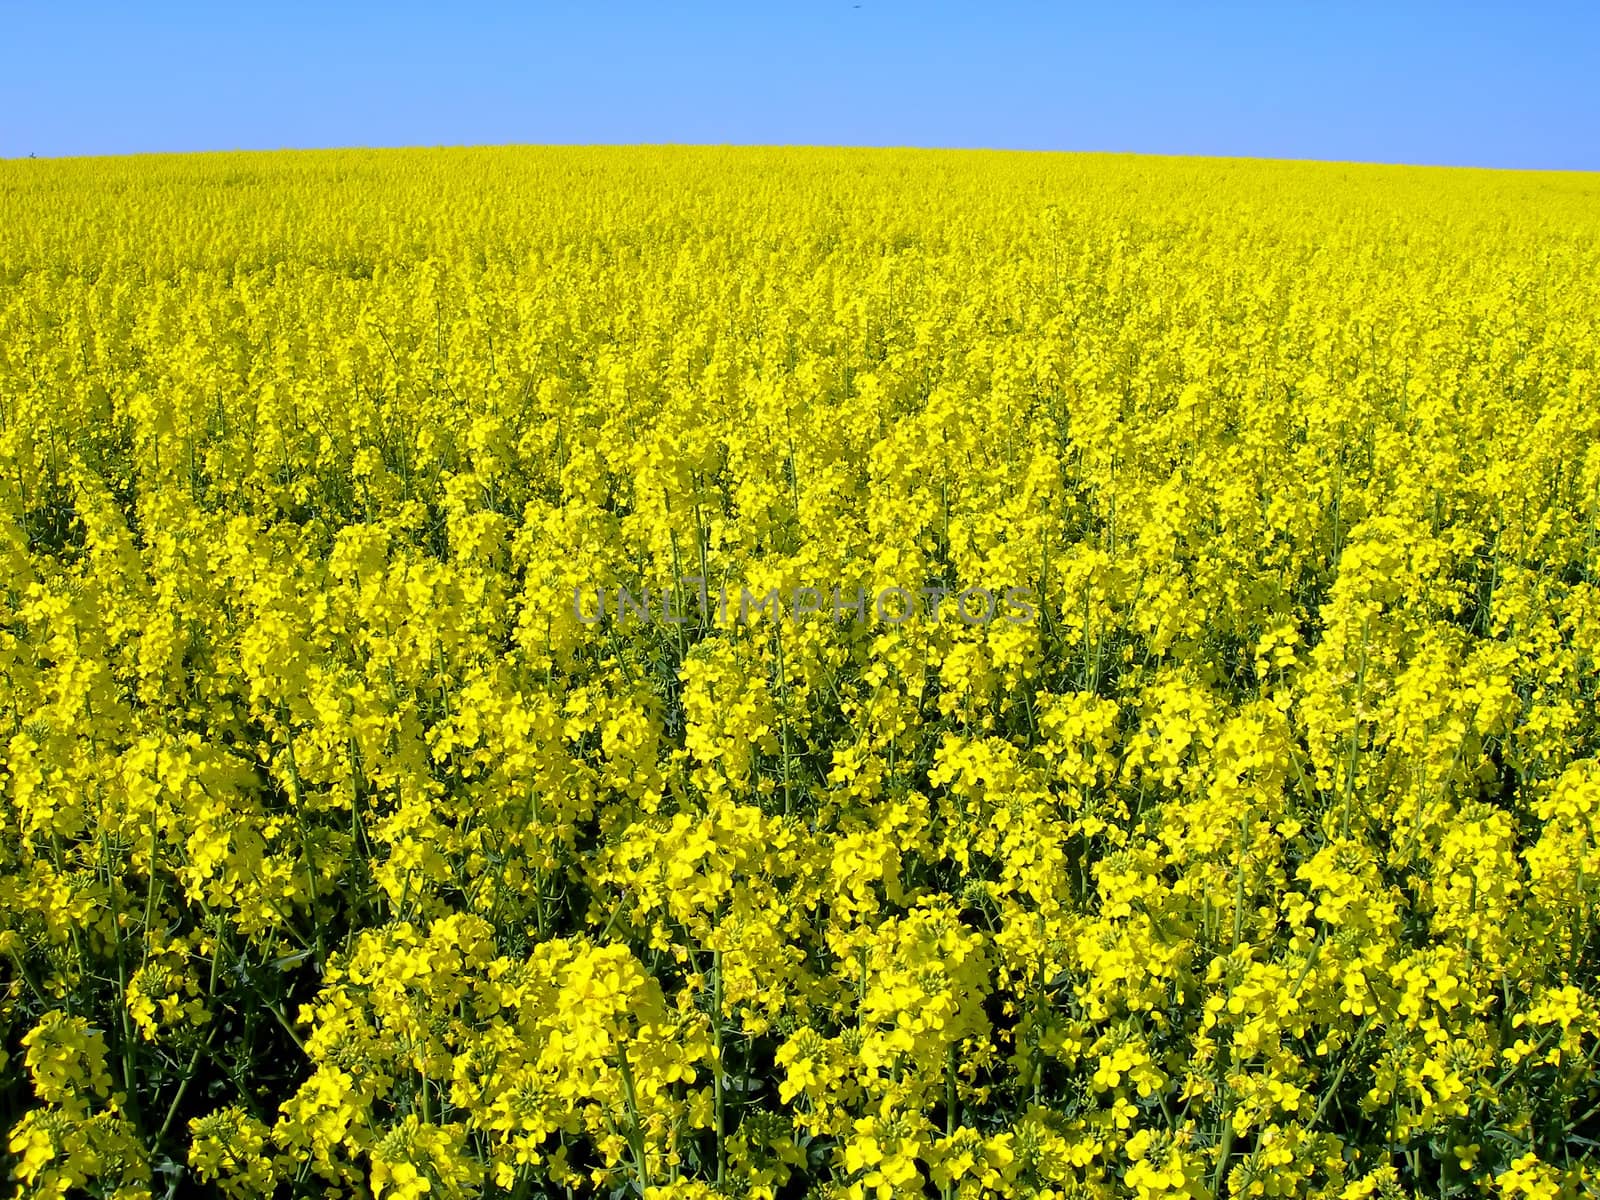   Field full of yellow rape in blossom - looks like yellow ocean        